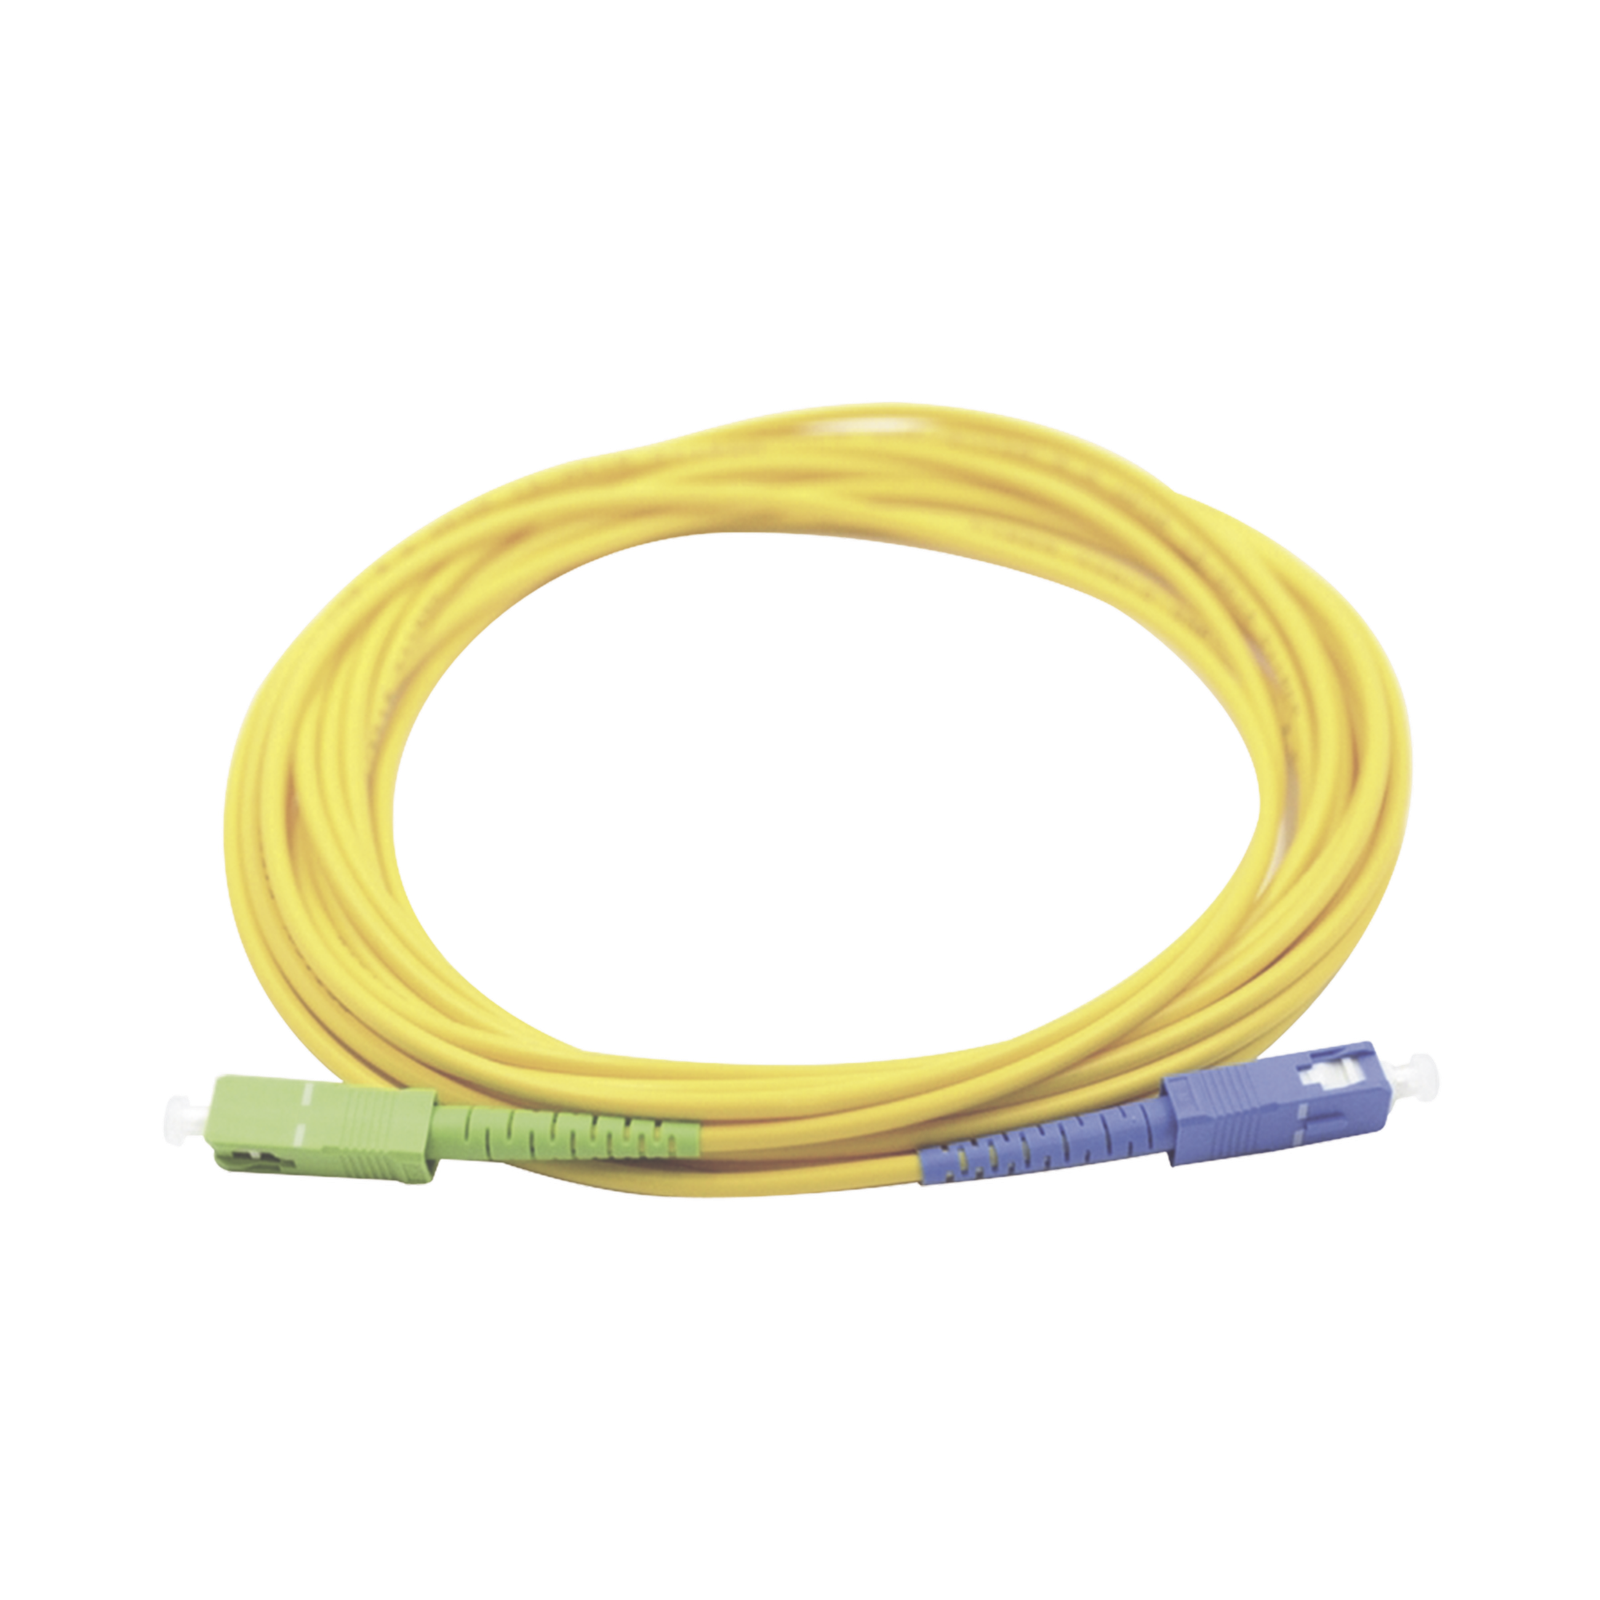 Comprar Cable de Fibra Óptica de 6 hilos, Multimodo OM3 50/125 Optimizada,  Interior, Tight Buffer 900um, No Conductiva (Dieléctrica), OFNR (Riser),  Precio Por Metro en